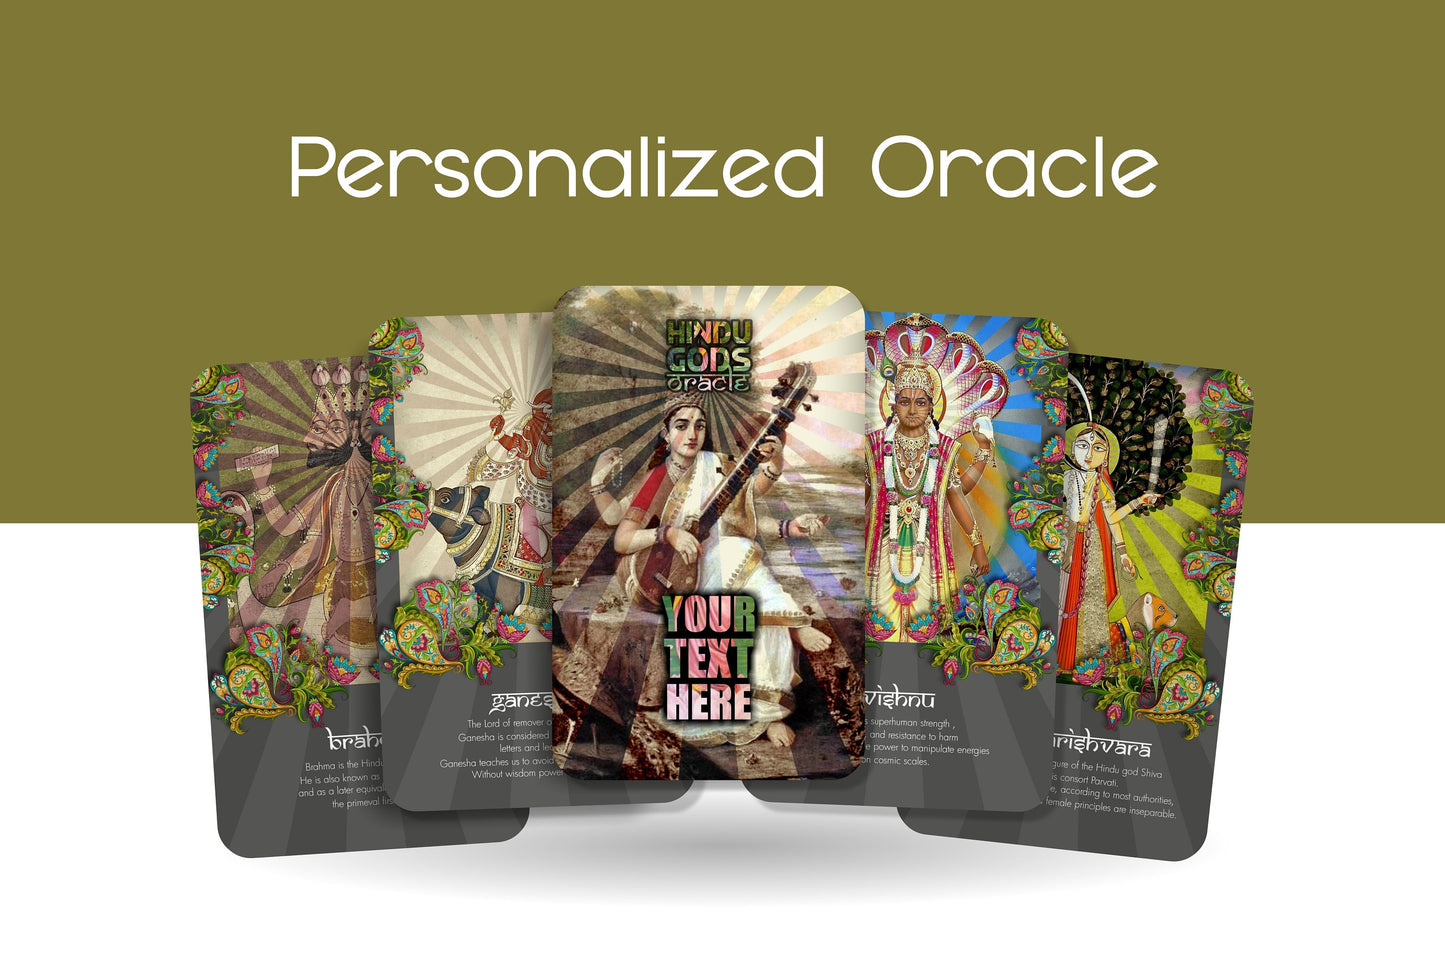 Personalised Oracle - Hindu Gods Oracle